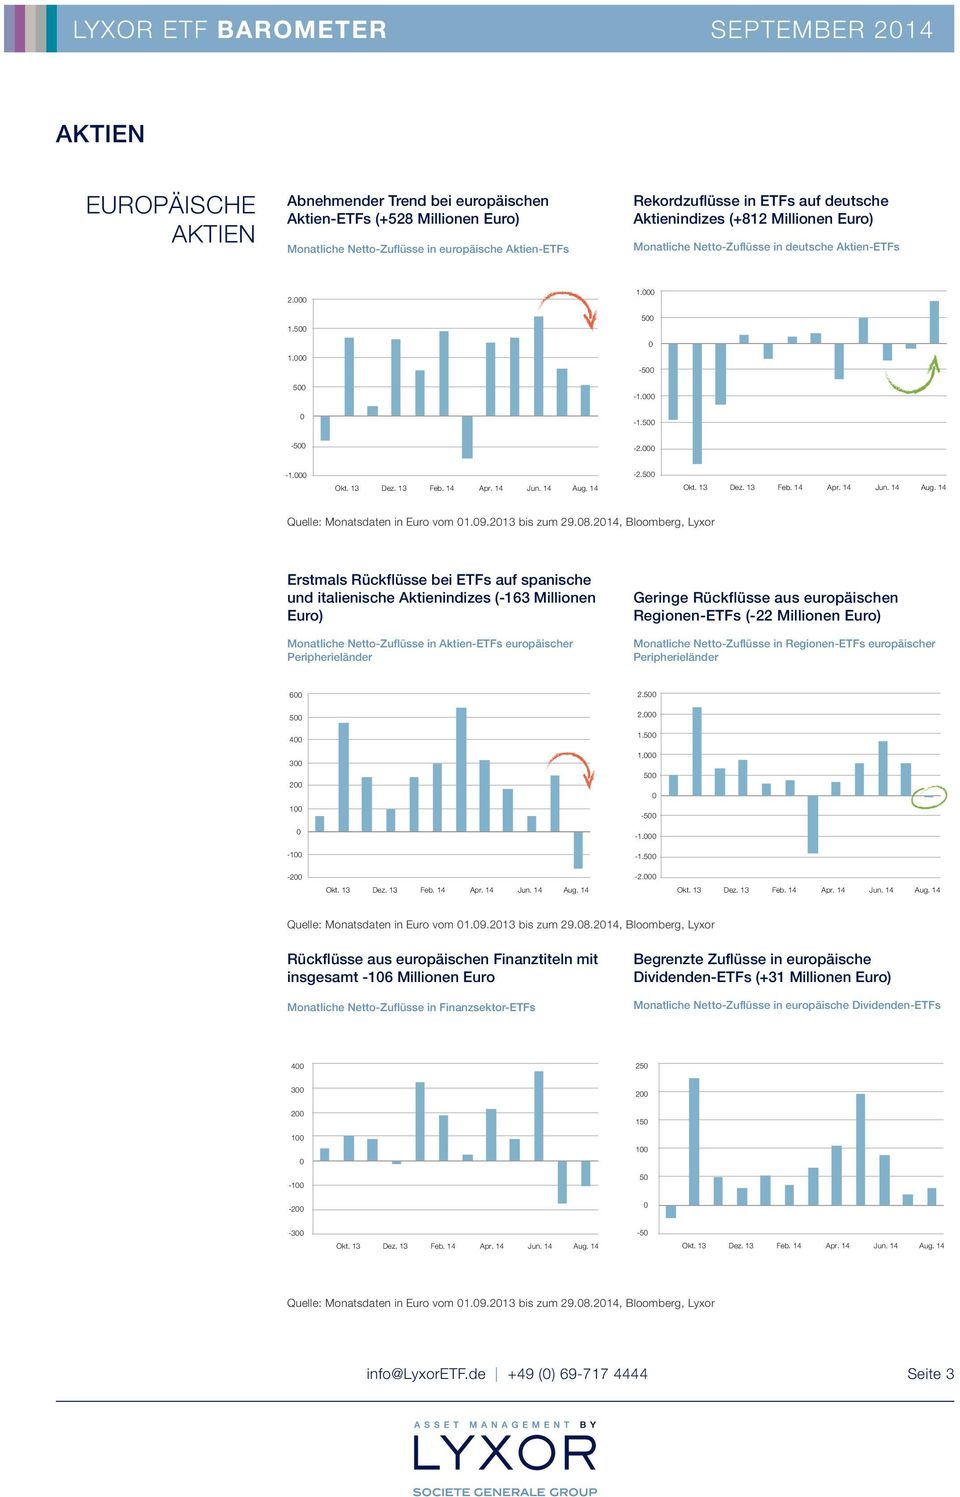 Rückflüsse bei ETFs auf spanische und italienische Aktienindizes (-163 Millionen Euro) Monatliche Netto-Zuflüsse in Aktien-ETFs europäischer Peripherieländer Geringe Rückflüsse aus europäischen